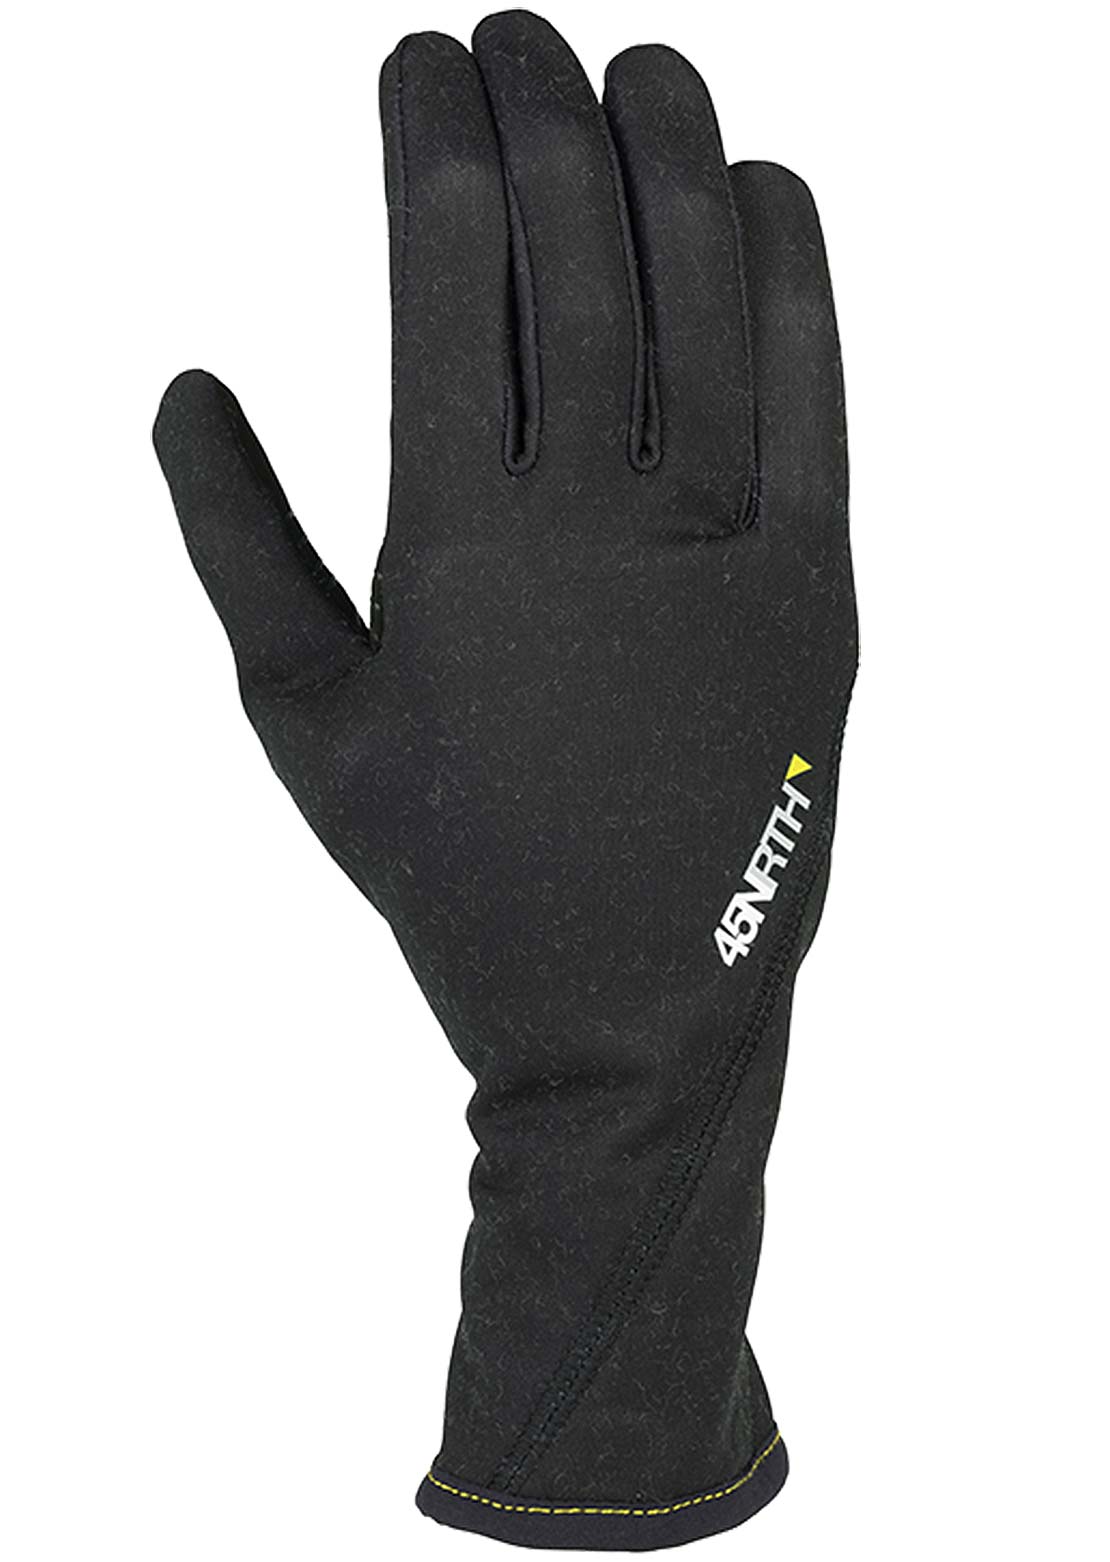 45NRTH Risor Liner Full Finger Mountain Bike Gloves Black